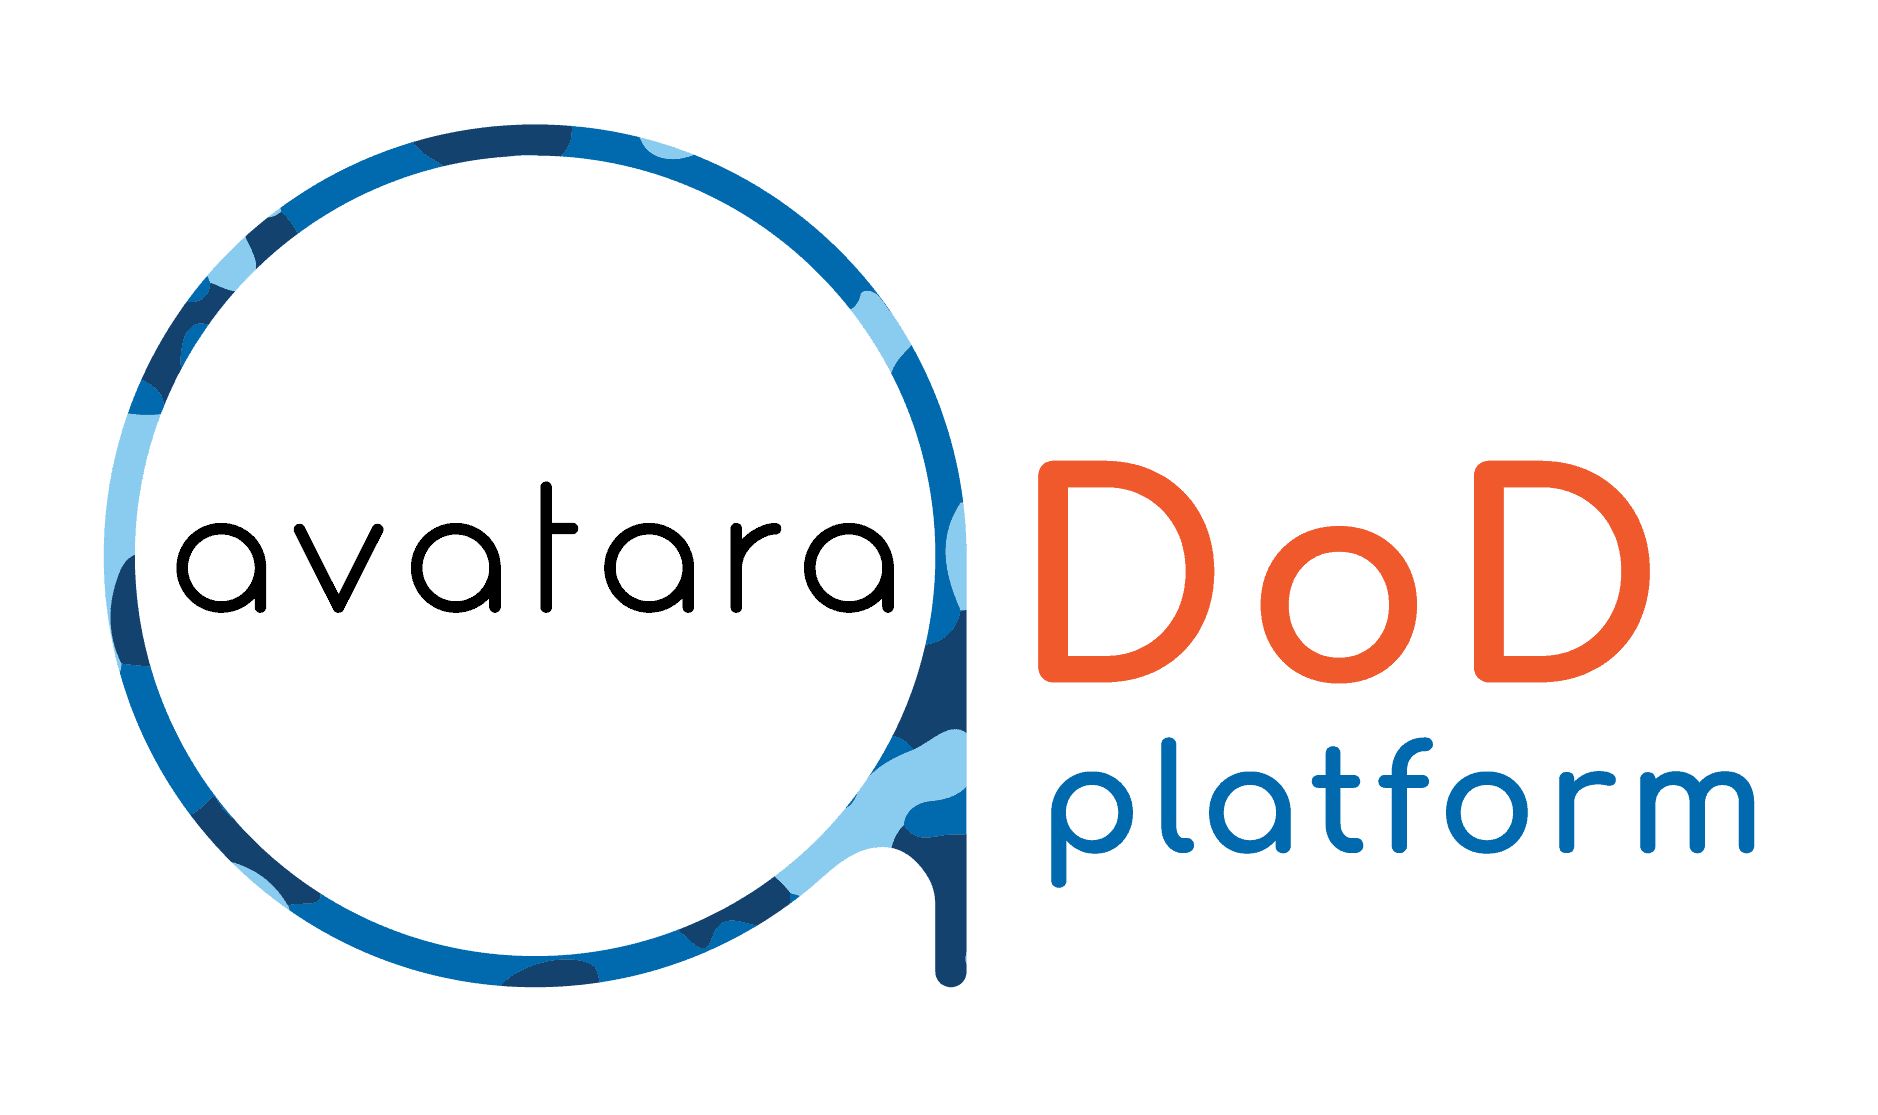 Avatara DoD Platform